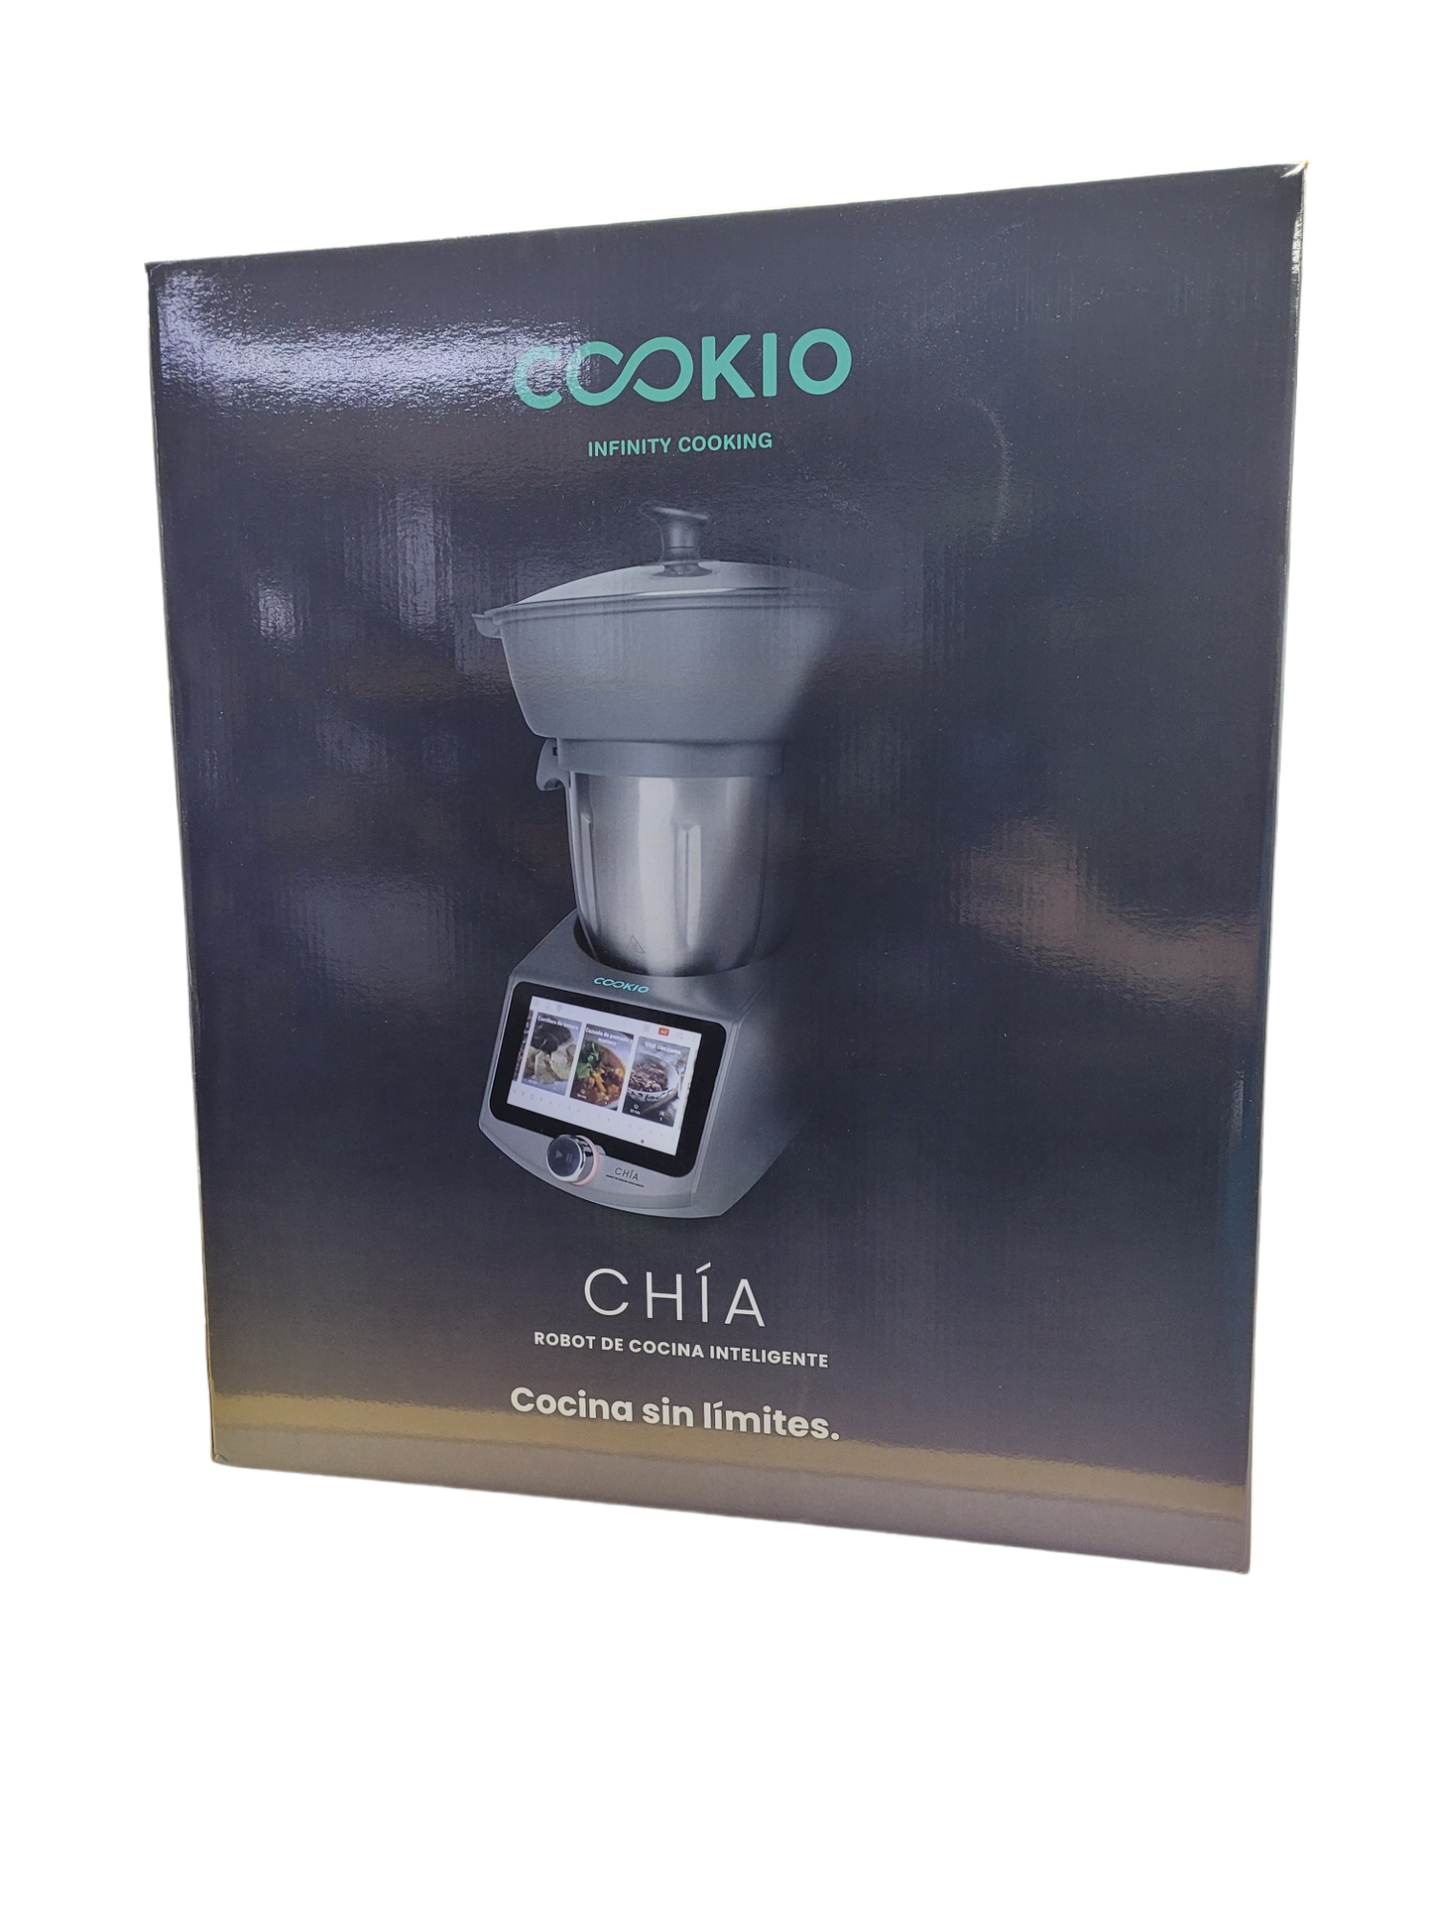 Robot de cocina Cookio Chía - Cookio